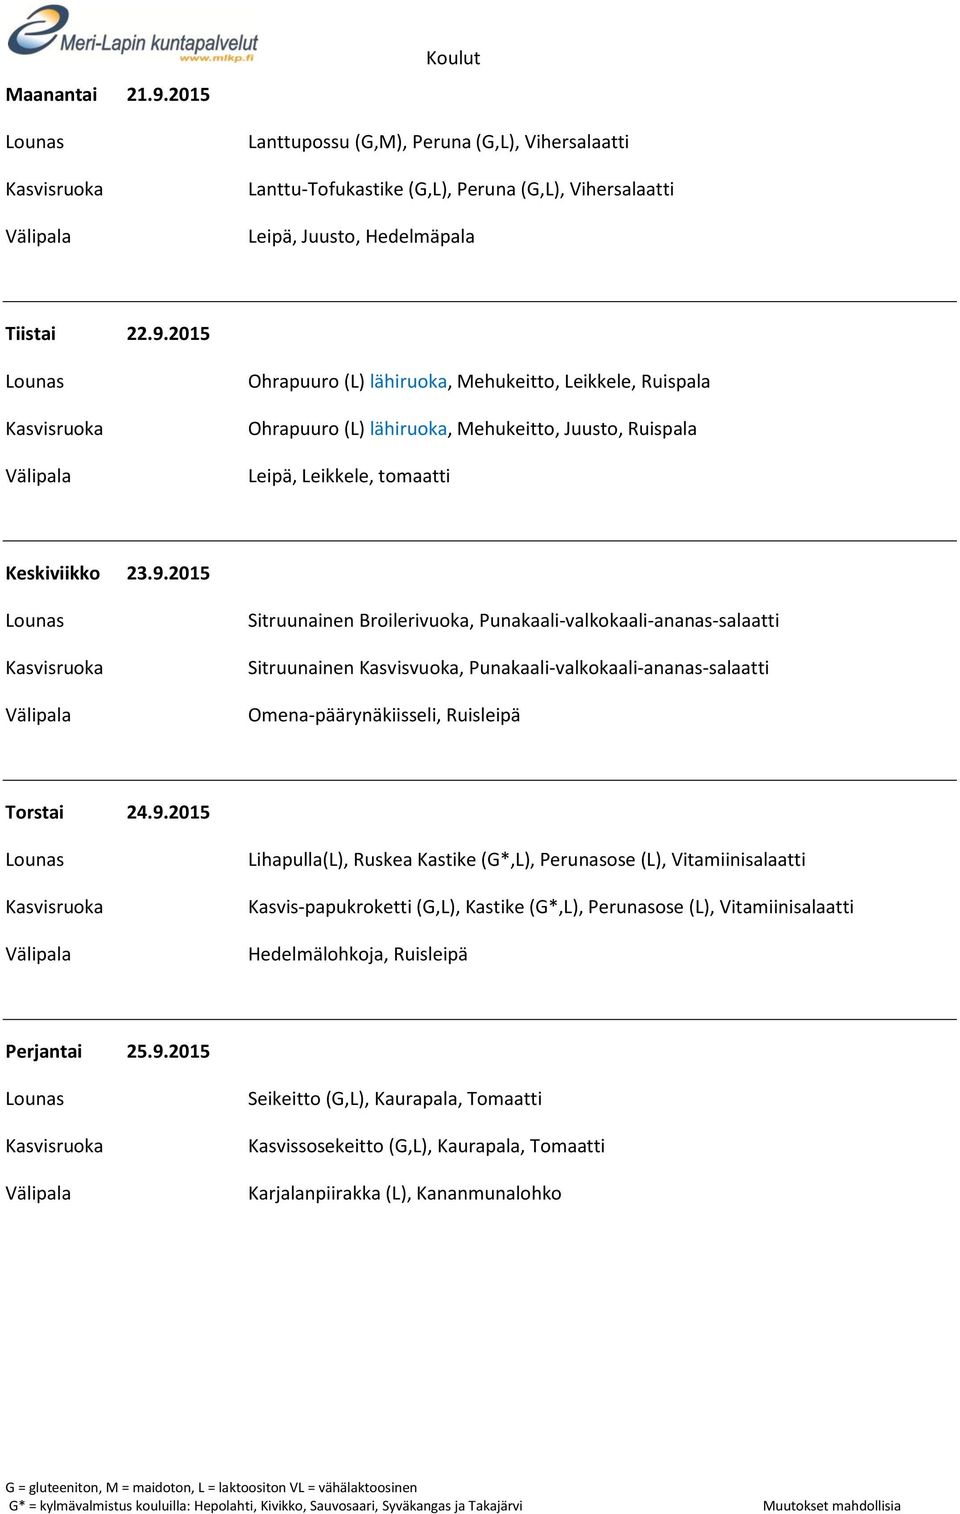 9.2015 Seikeitto (G,L), Kaurapala, Tomaatti Kasvissosekeitto (G,L), Kaurapala, Tomaatti Karjalanpiirakka (L), Kananmunalohko